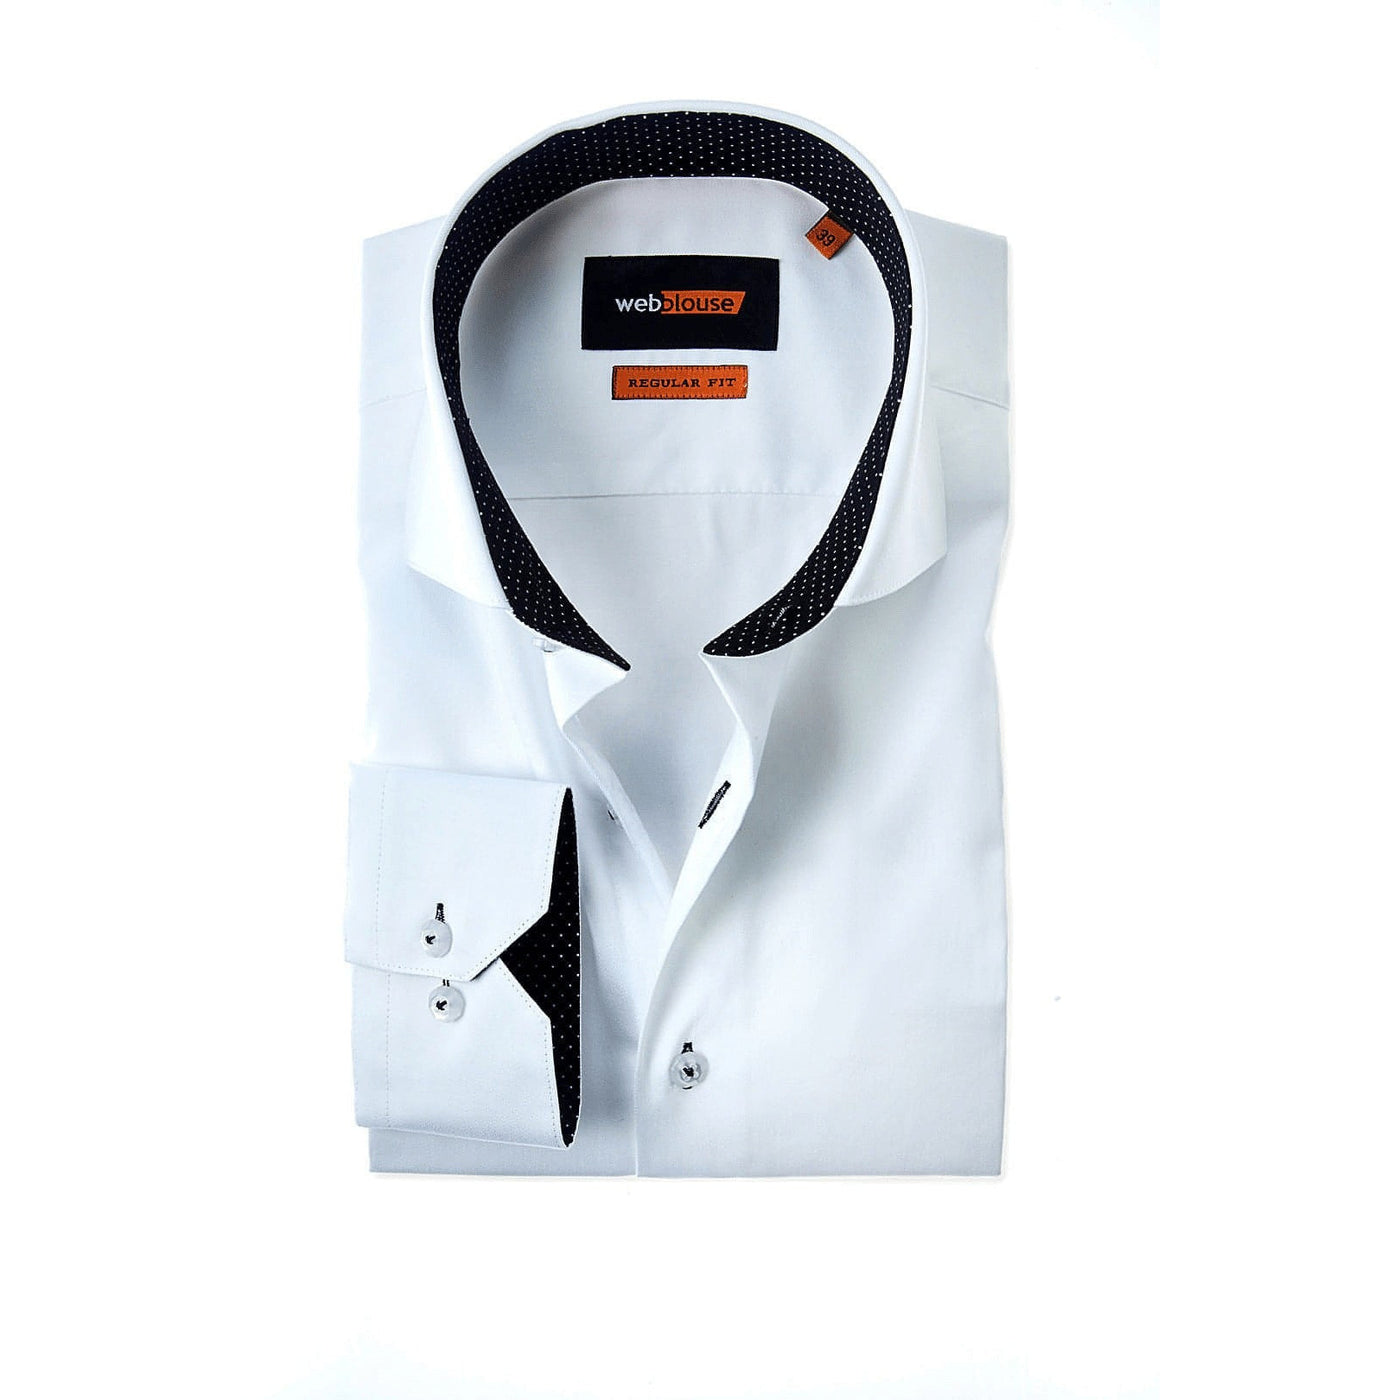 Heren overhemd wit met zwarte kraag stip contrast